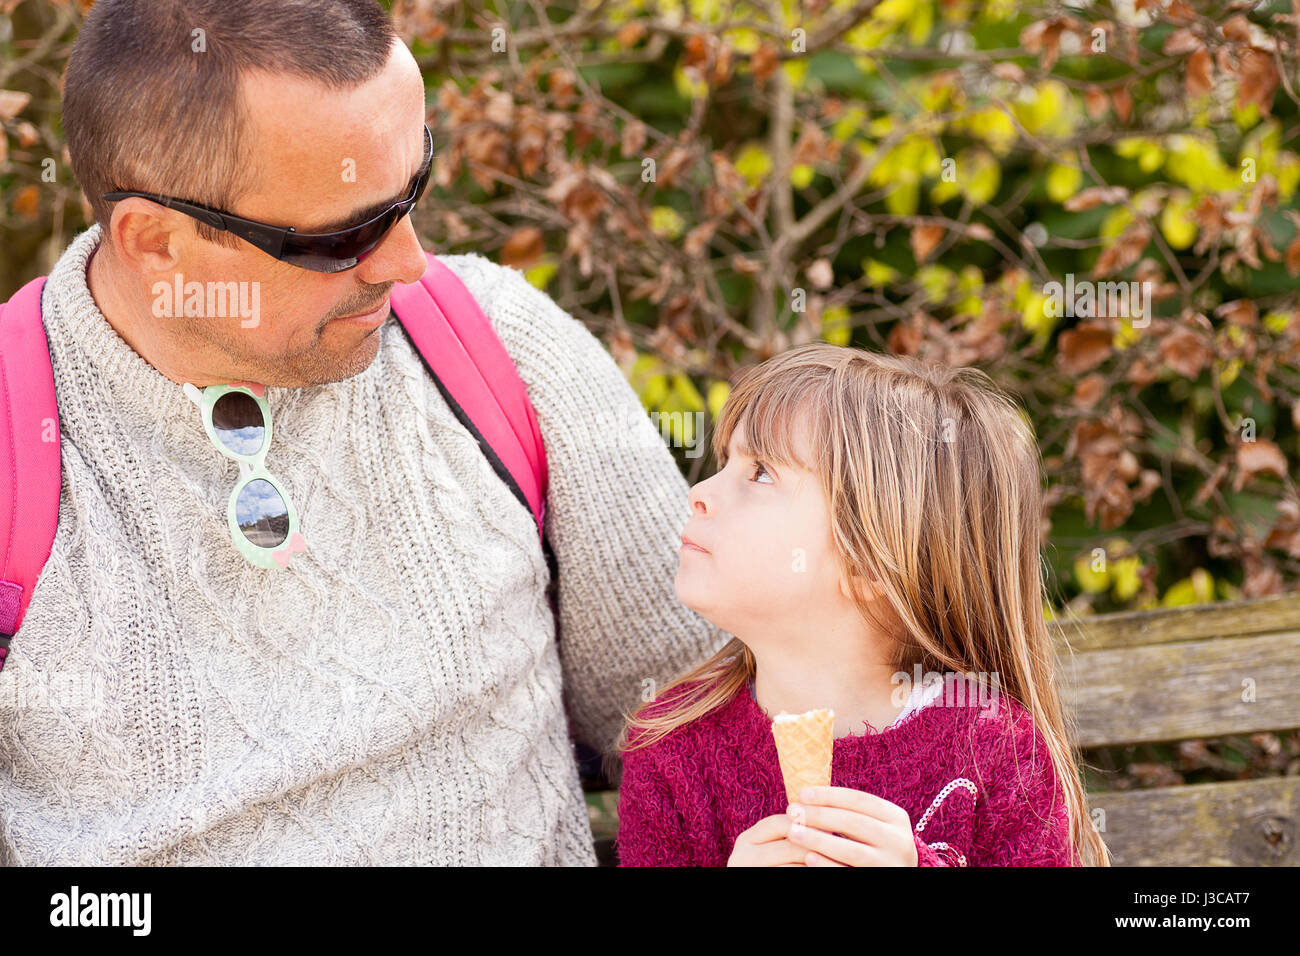 Echte Menschen. Mann und Mädchen sahen einander. Vater und Tochter, die Zeit im Freien mit Eis zu genießen. Candid Familienporträt. Stockfoto